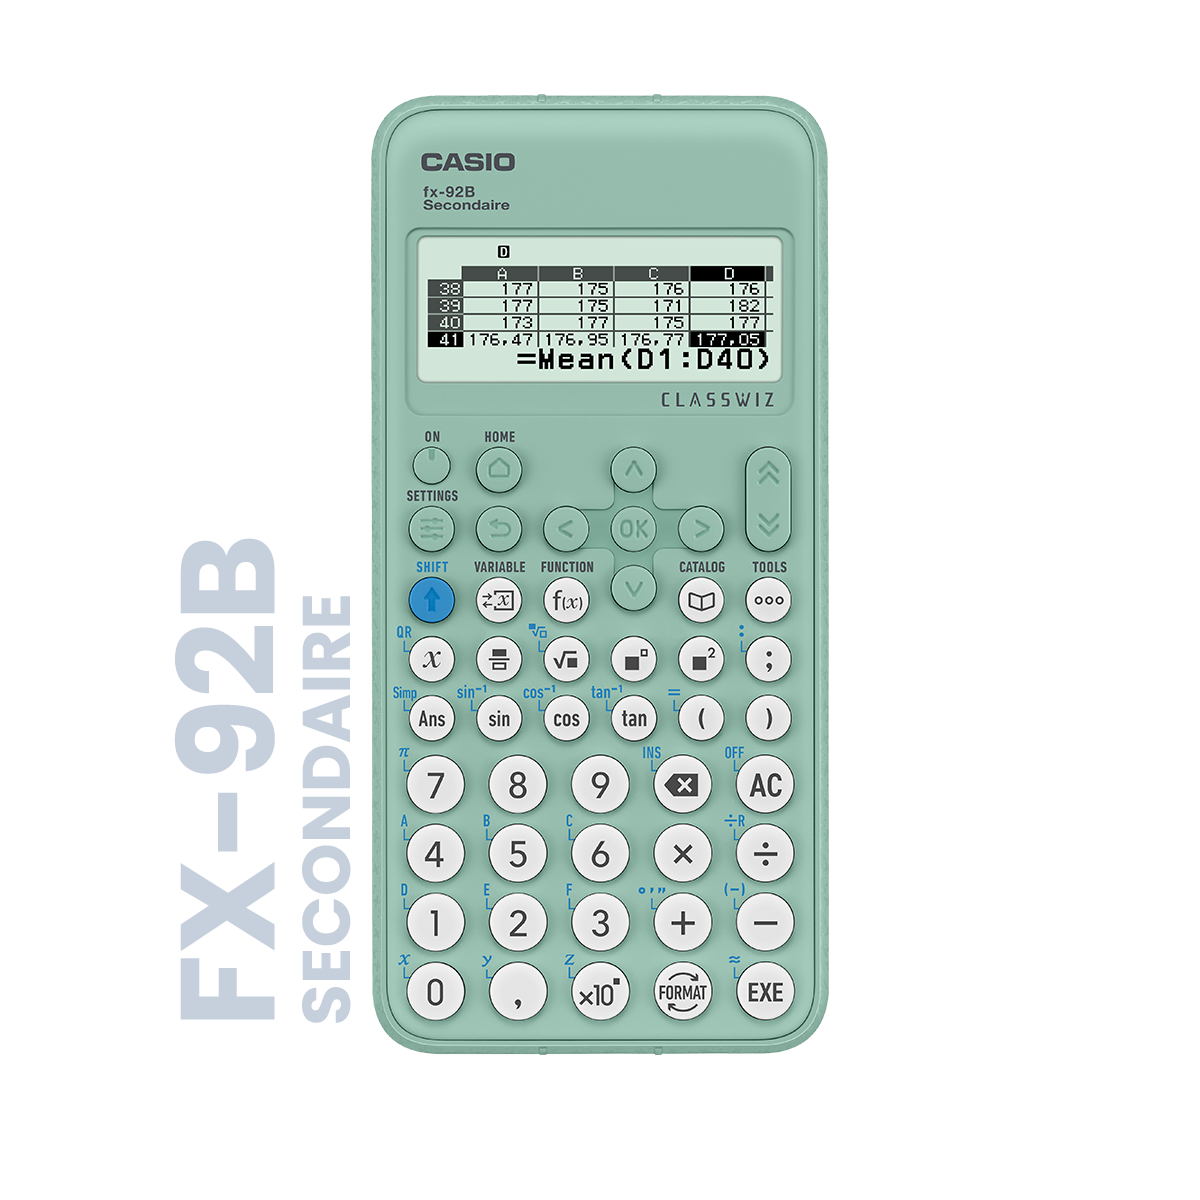 Calculatrices Casio : Des modèles adaptés au primaire, collège et